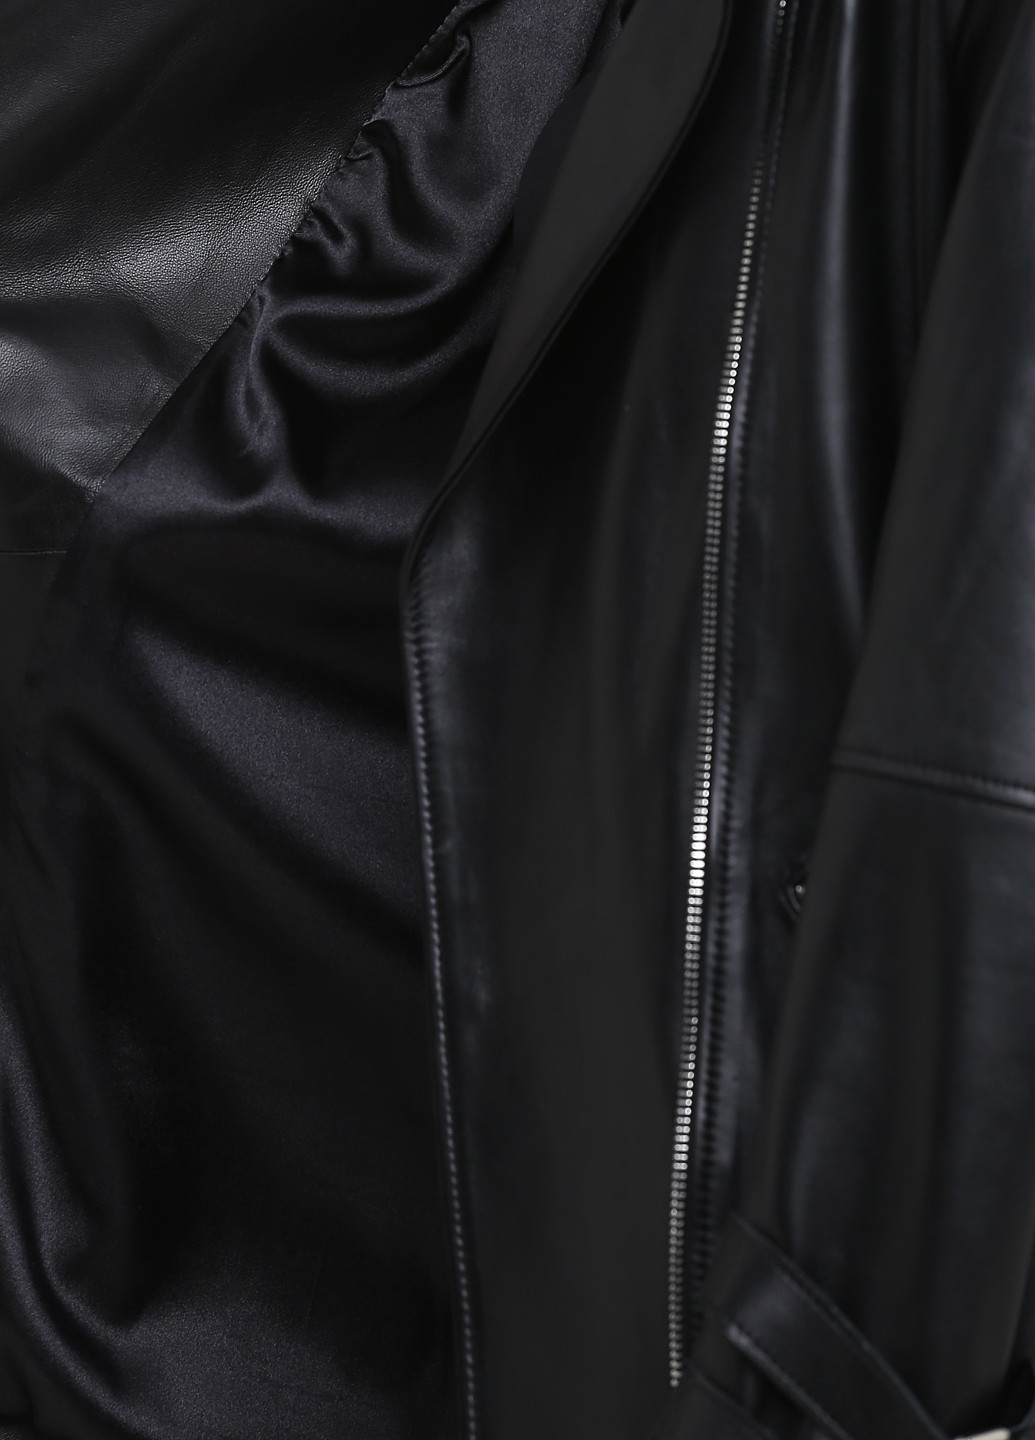 Черная демисезонная куртка кожаная Viaveneto